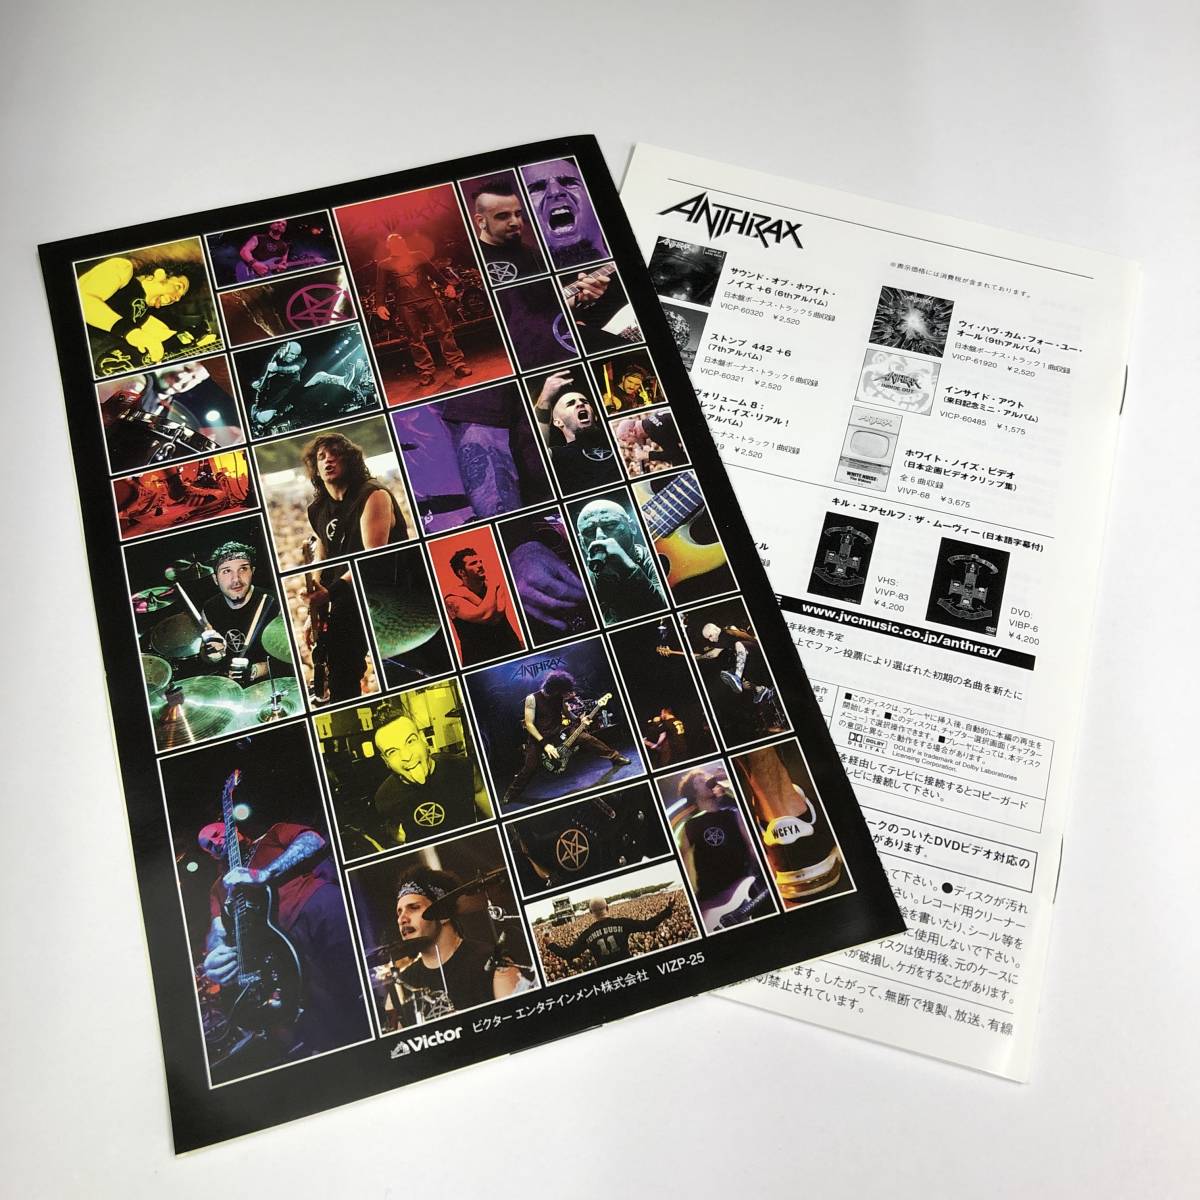 ■ アンスラックス - ミュージック・オブ・マス・ディストラクション-ライヴ・フロム・シカゴ VIZP-25 DVD+CD Anthrax_画像5